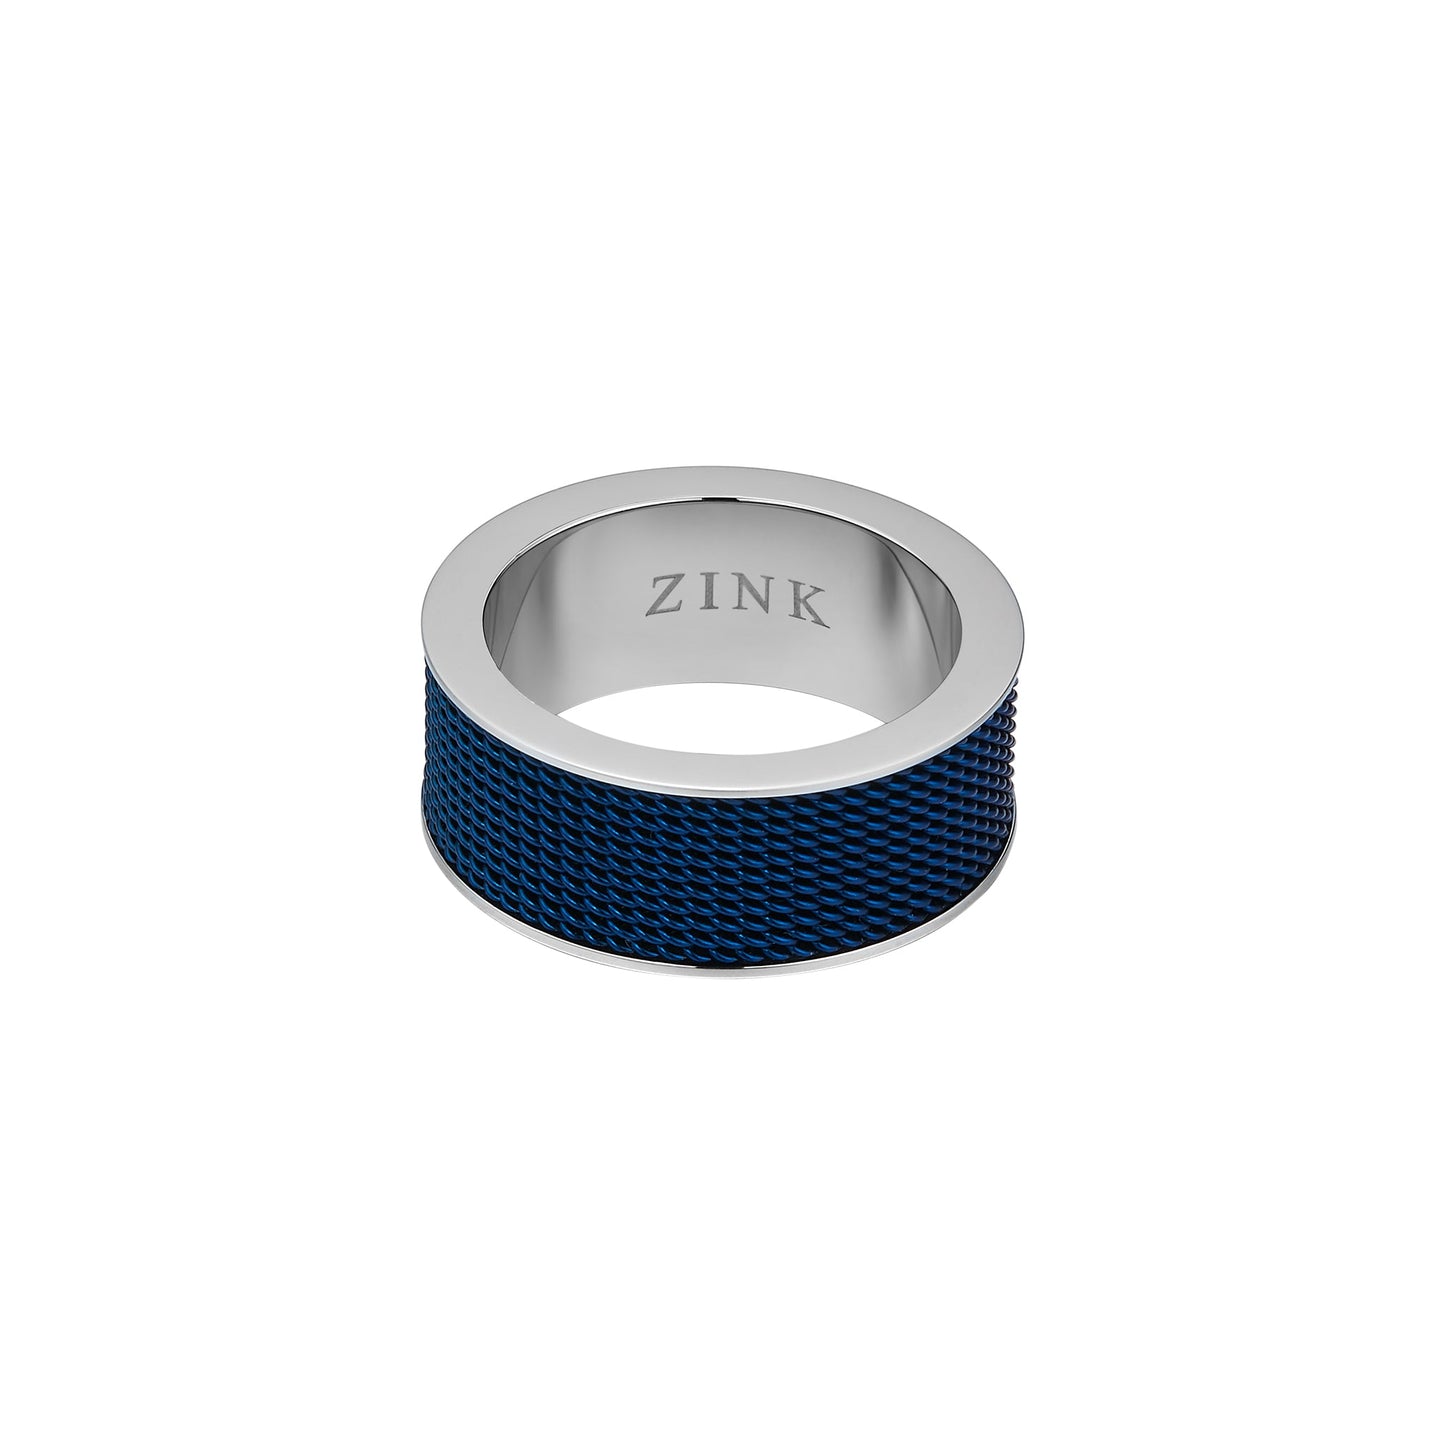 ZJRG019SBL ZINK Men's Ring